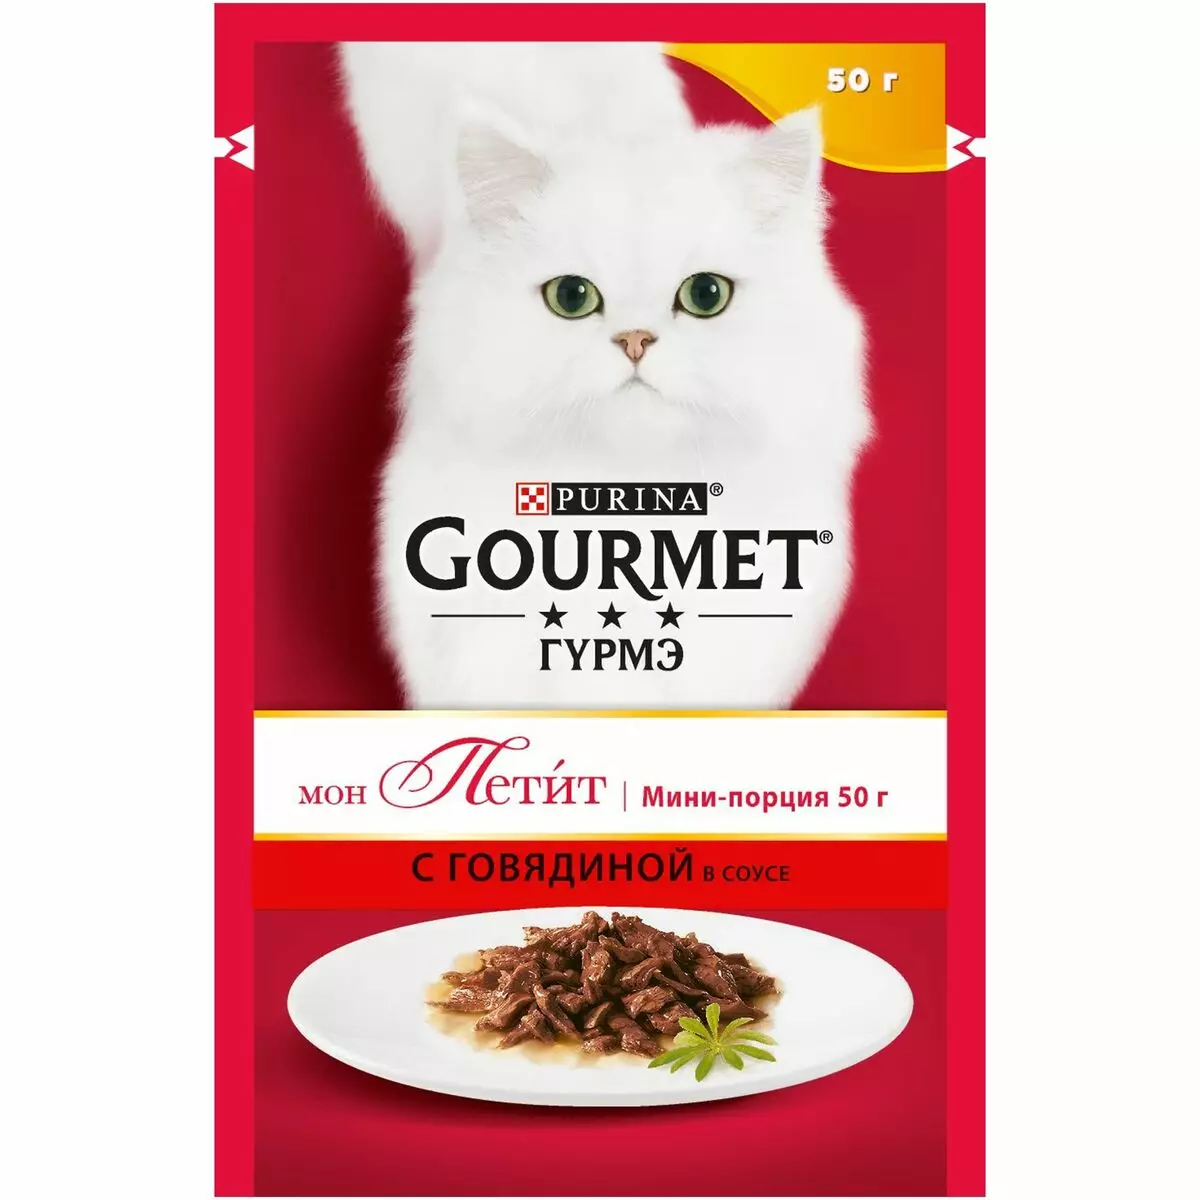 Gourmet: gat de gat i gatets de purina, patis humits i altres aliments enllaunats felins, la seva composició, comentaris 22711_39